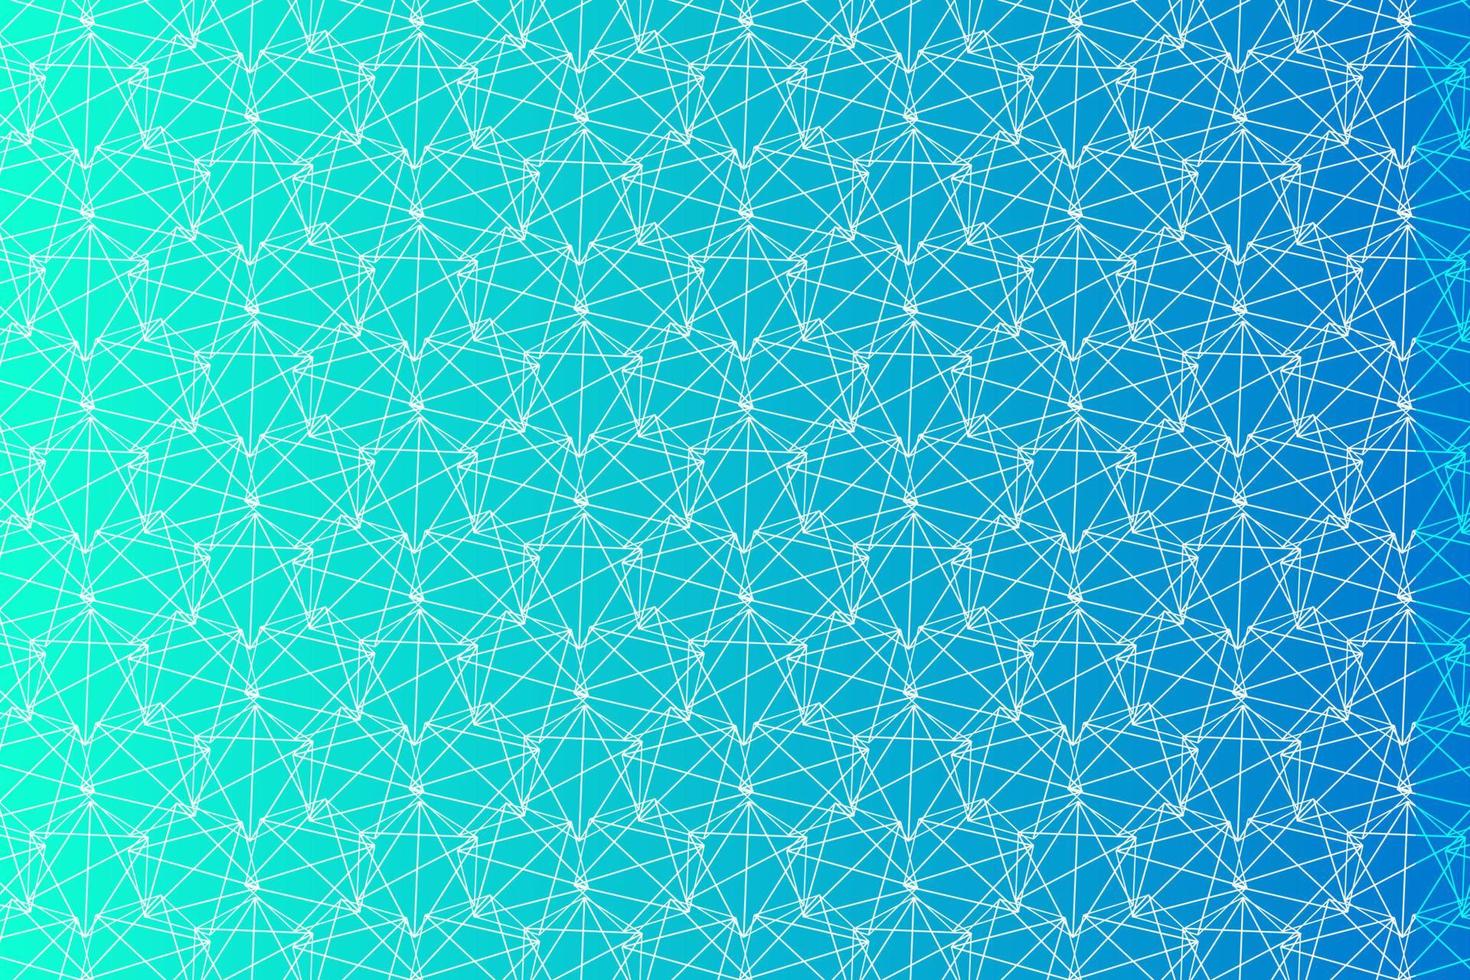 padrão com elementos geométricos em tons de azul abstrato gradiente para design vetor